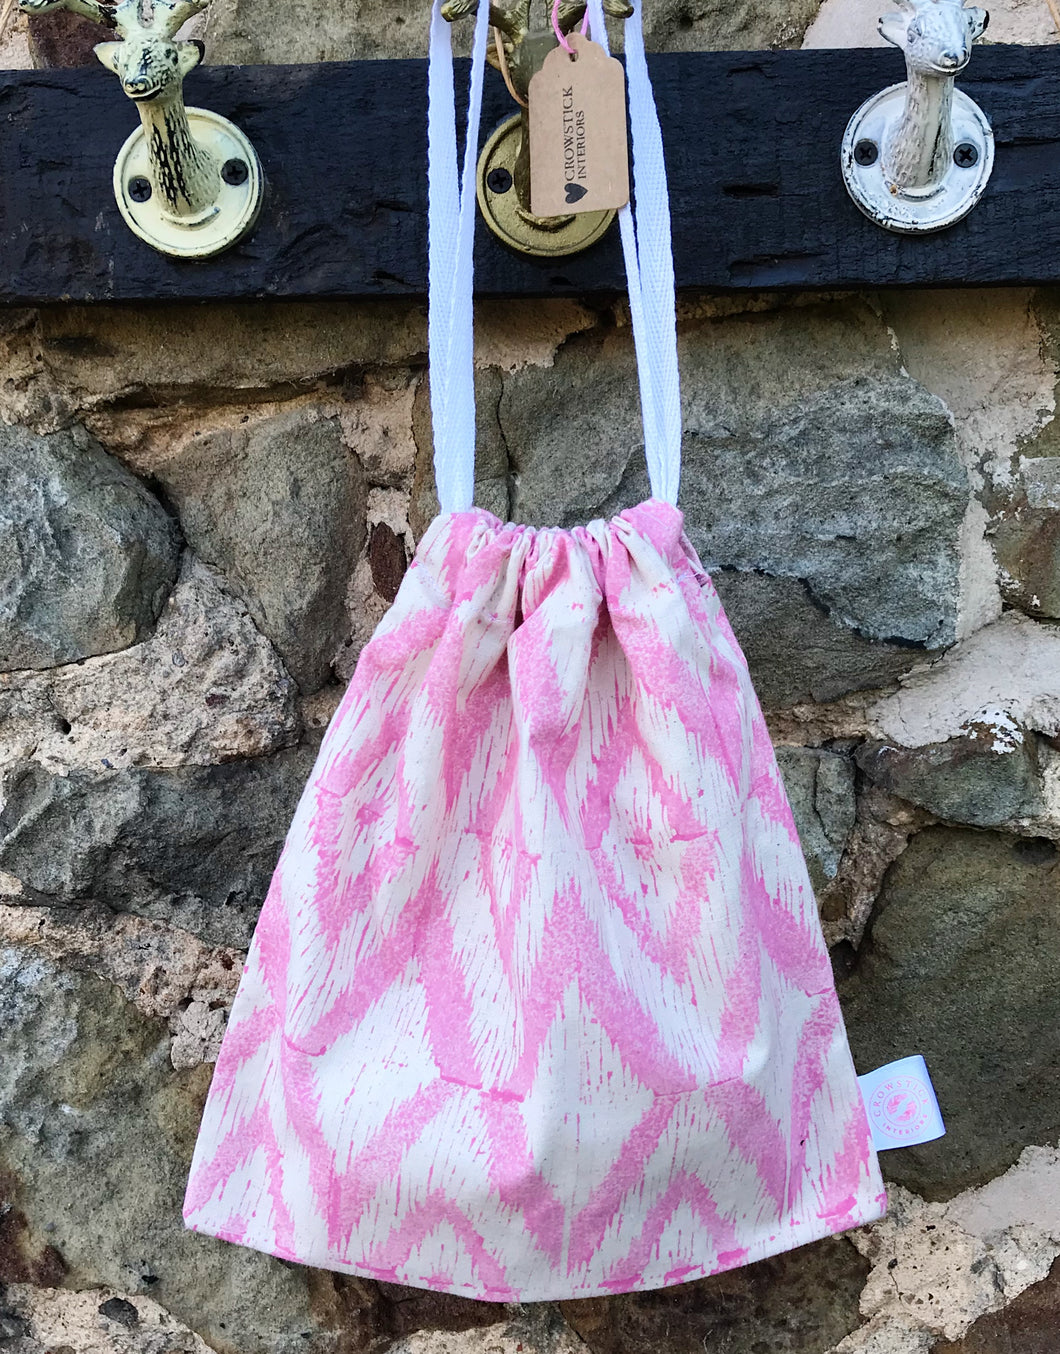 Hand Block Printed, Pink Drawstring Bag - Small